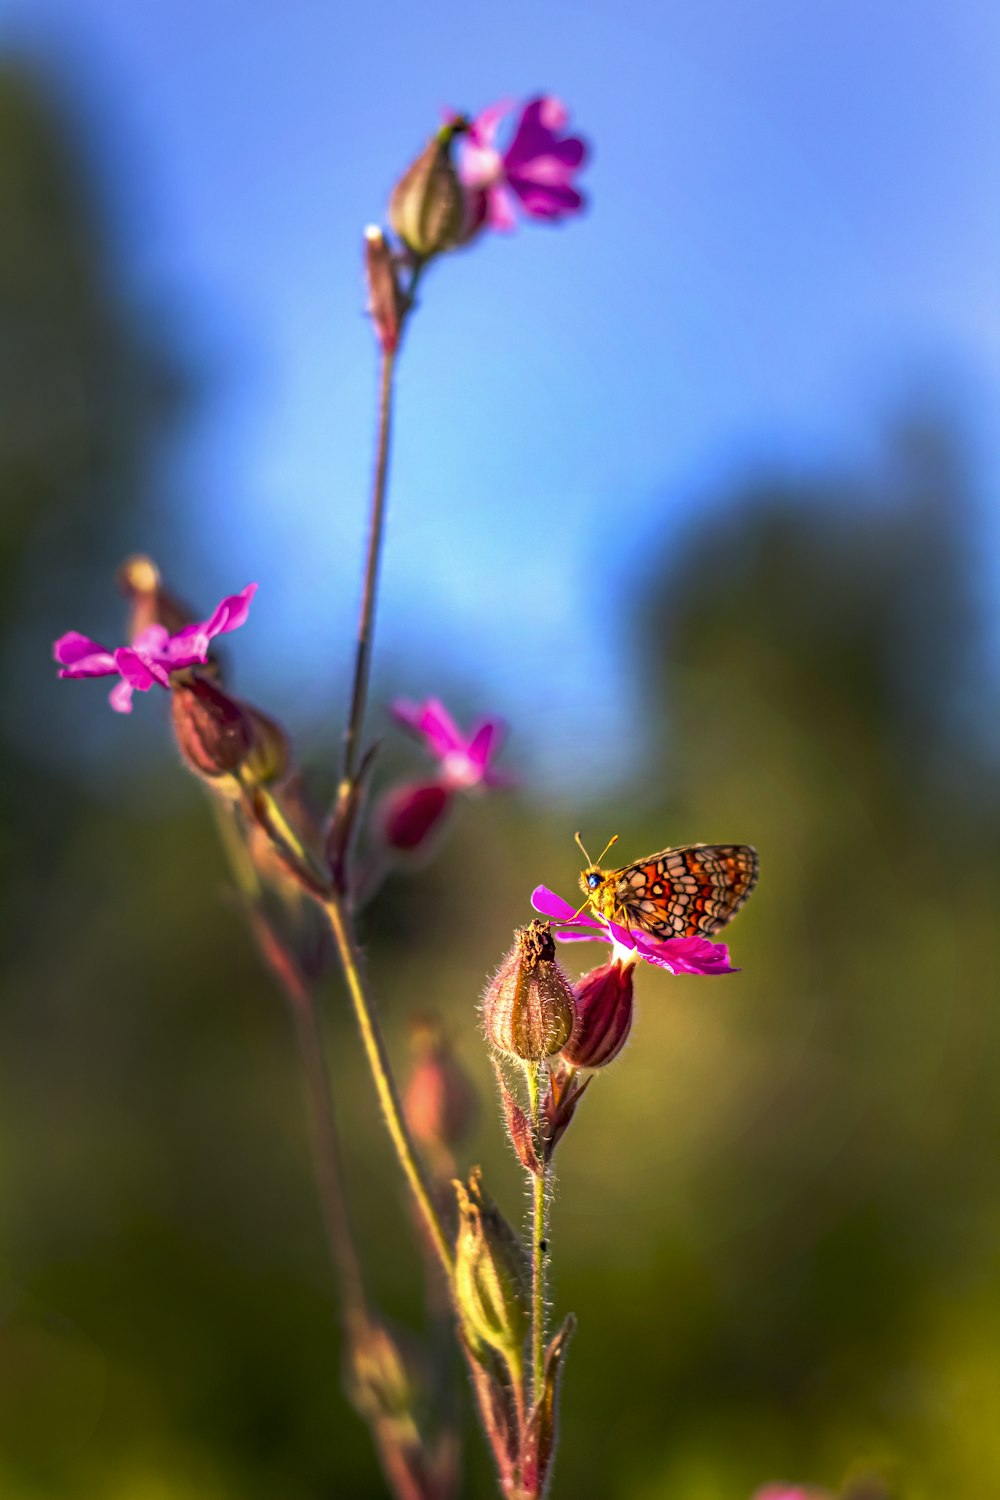 borboleta marrom e preta empoleirada na flor rosa em fotografia de perto durante o dia